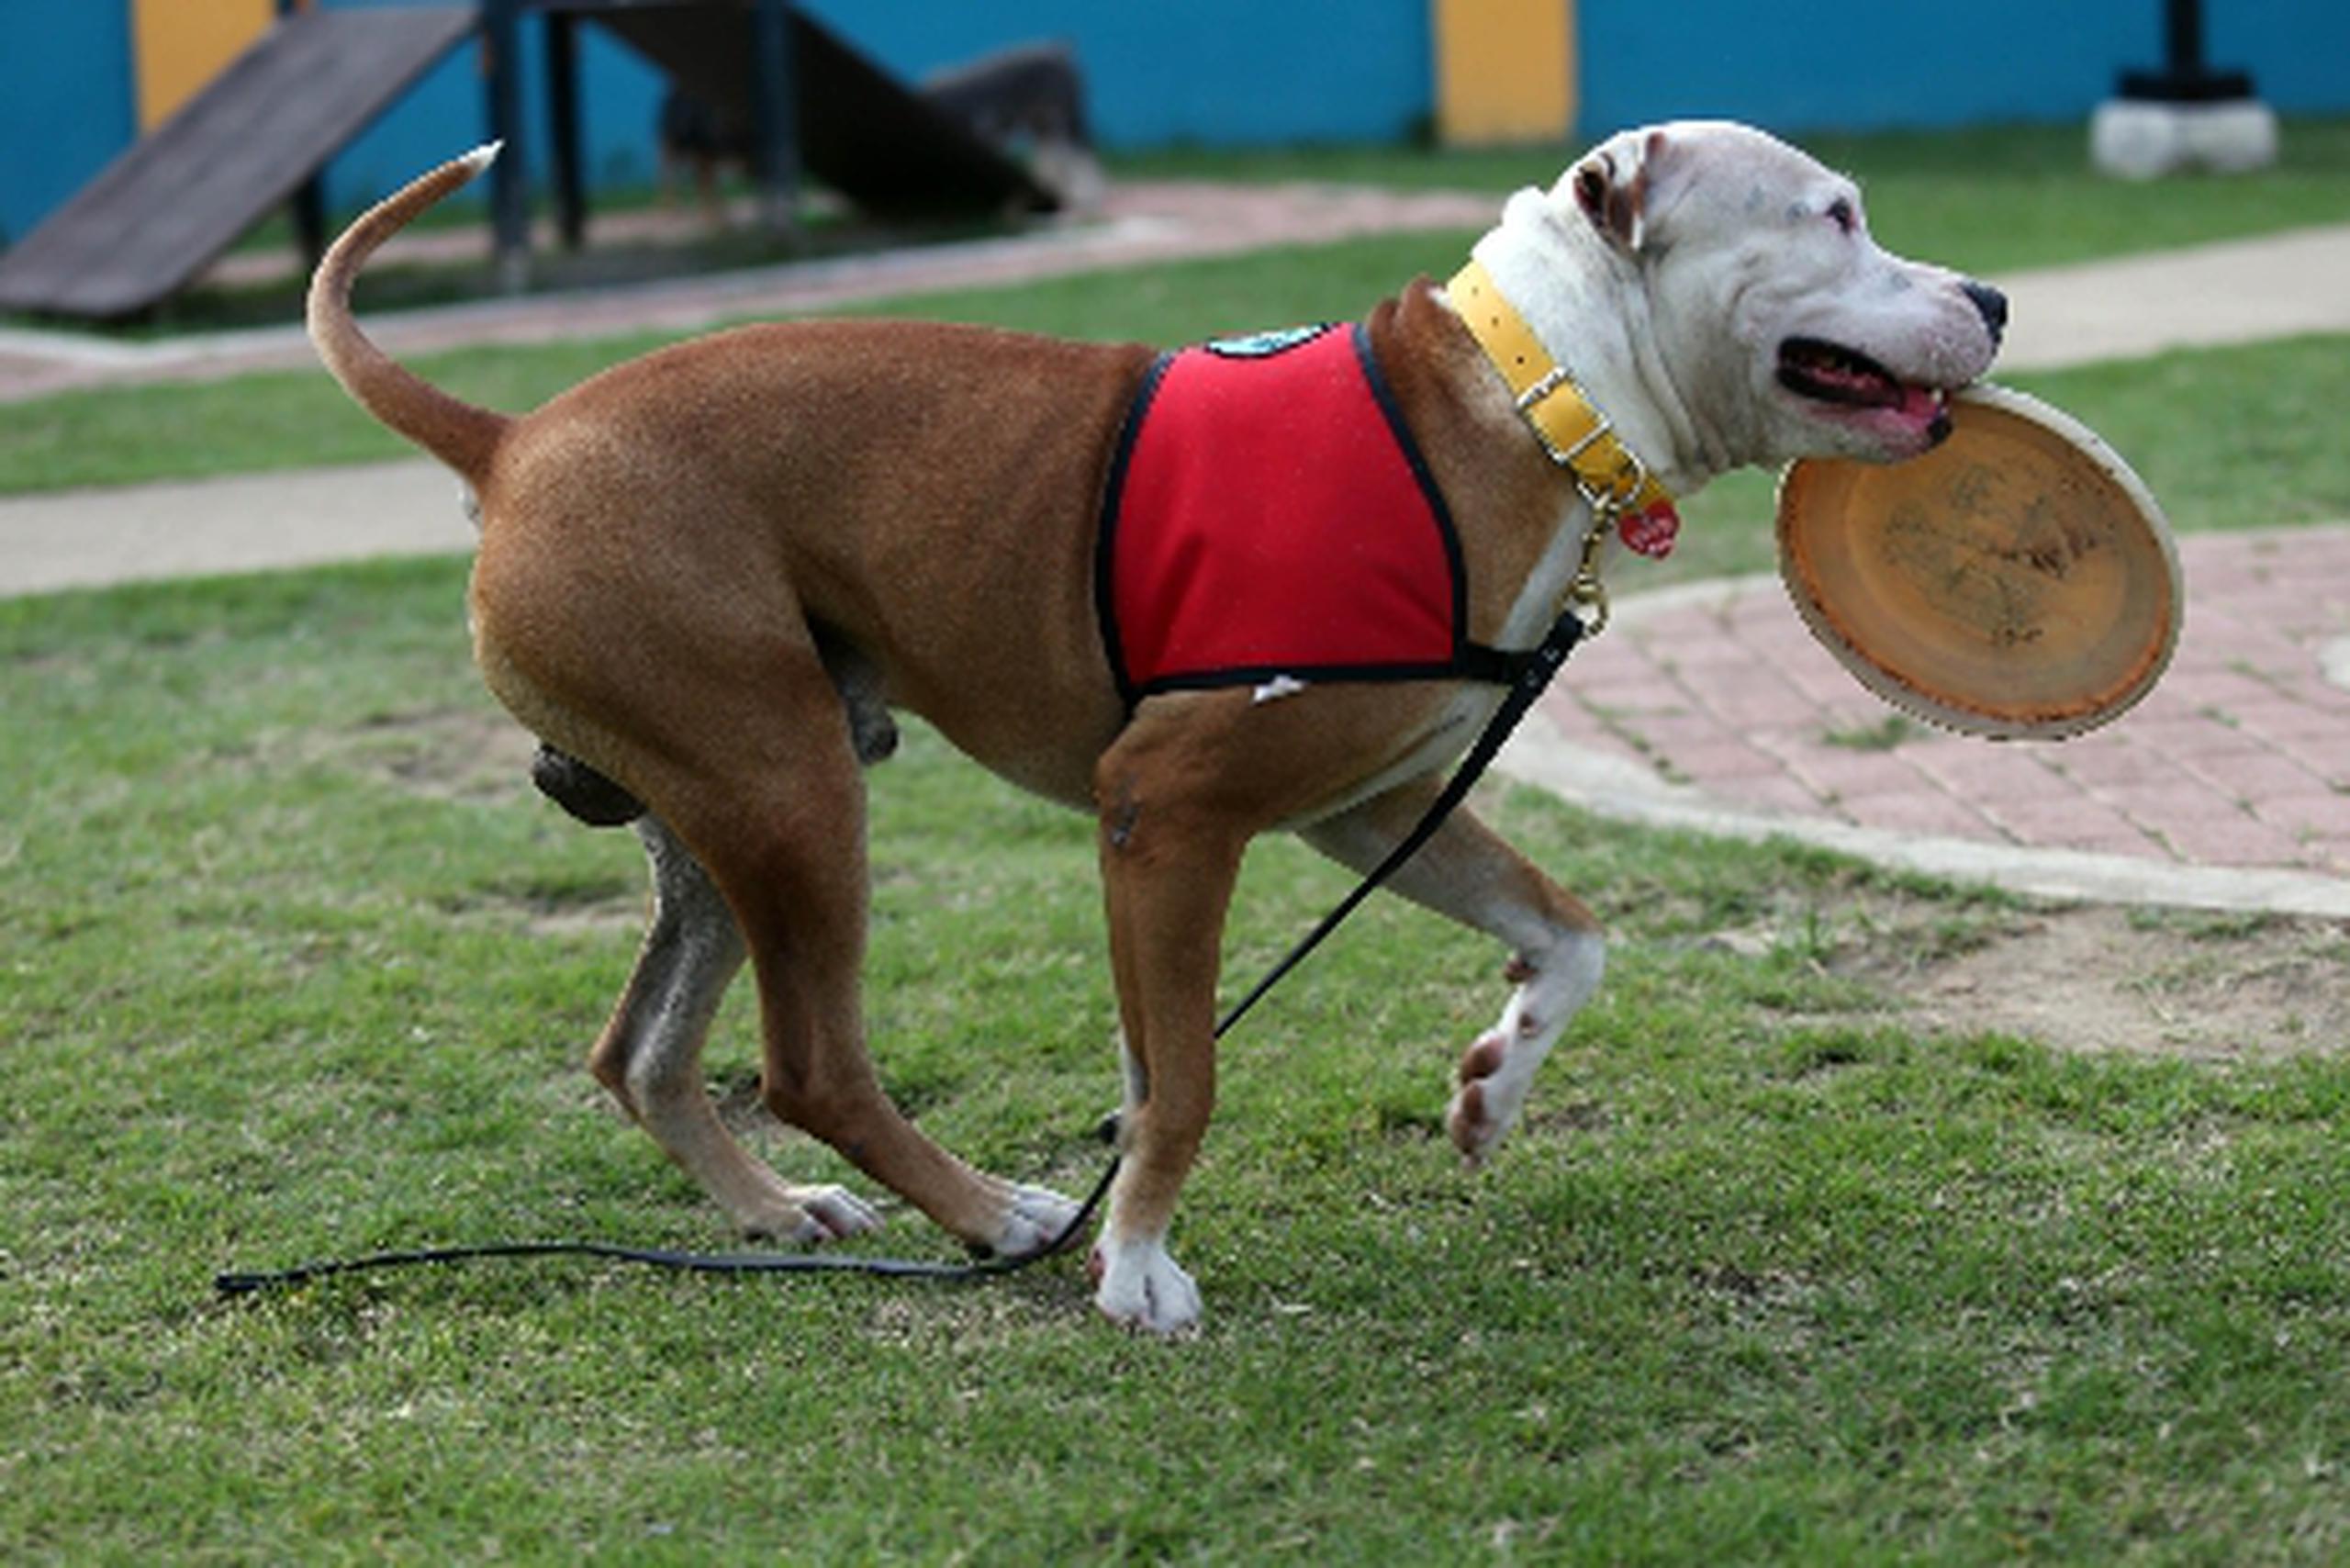 Pepe es un pit bull entrenado para rehabilitación, y participa de muchas actividades con niños con cáncer, quienes se llenan de alegría cuando interactúan con el can.&nbsp;<font color="yellow">(wandaliz.vega@gfrmedia.com)</font>